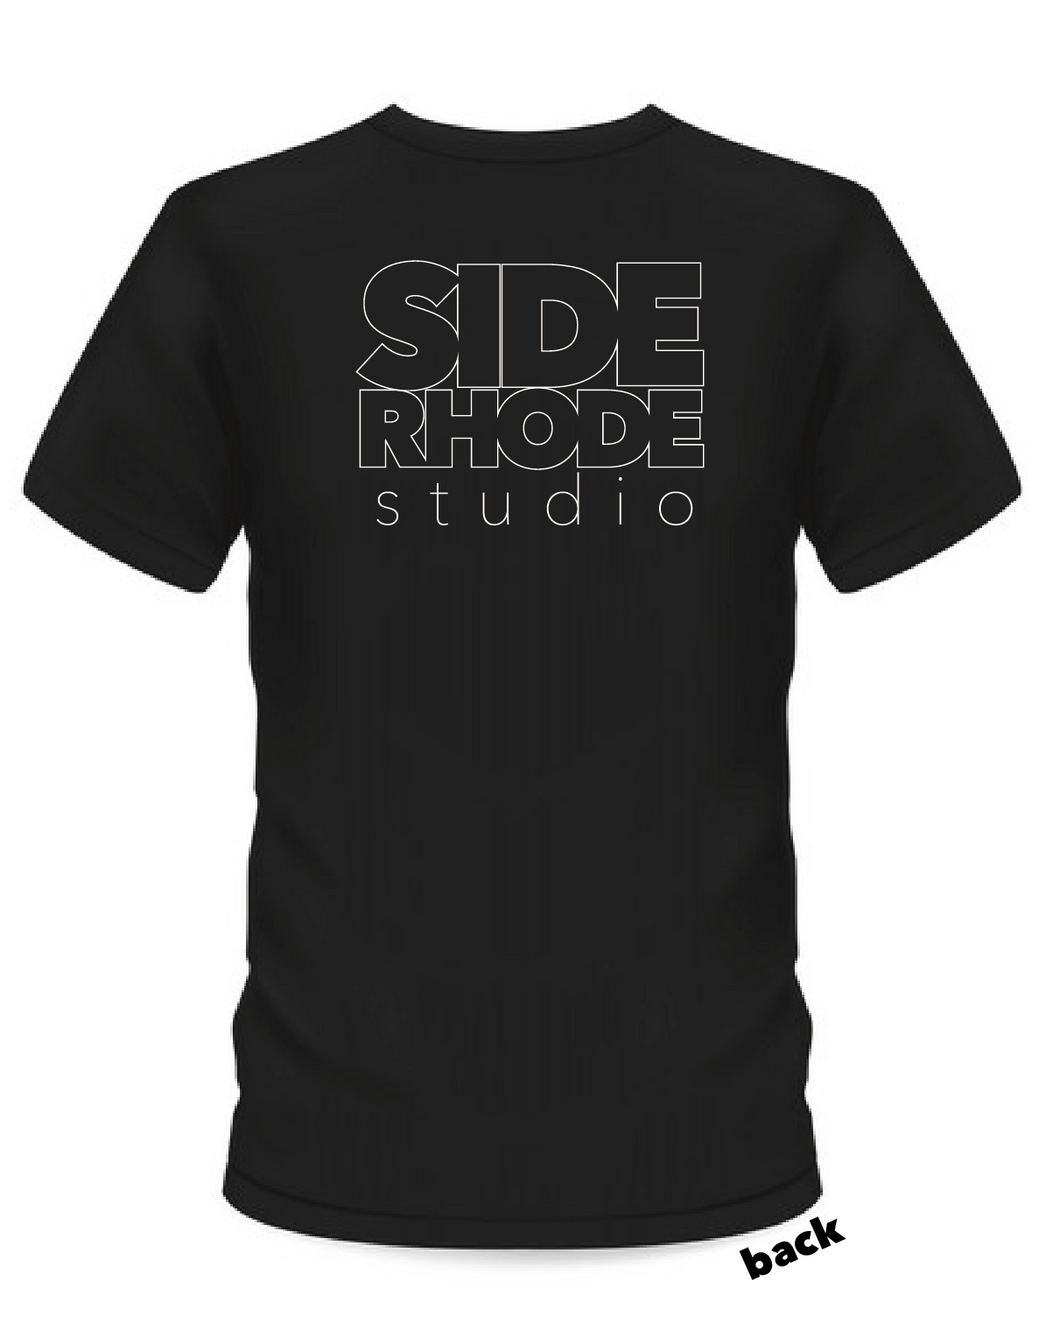 Side Rhode Studio Official T-shirt